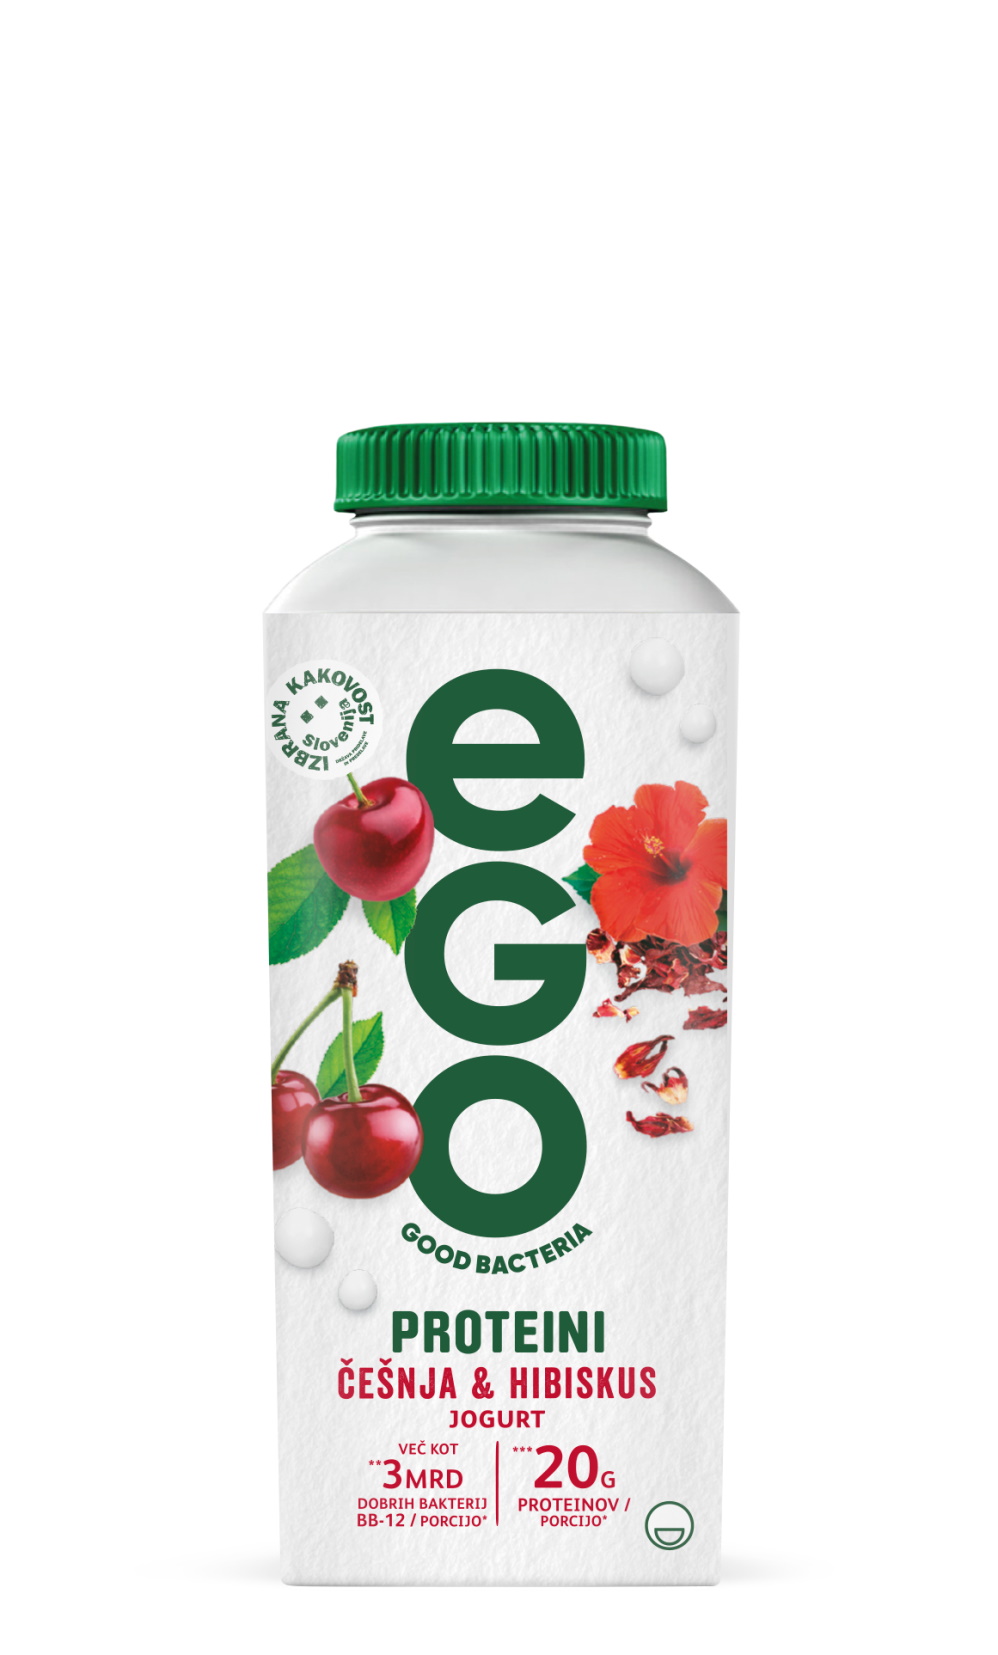 Ego, proteini cherry hibiscus